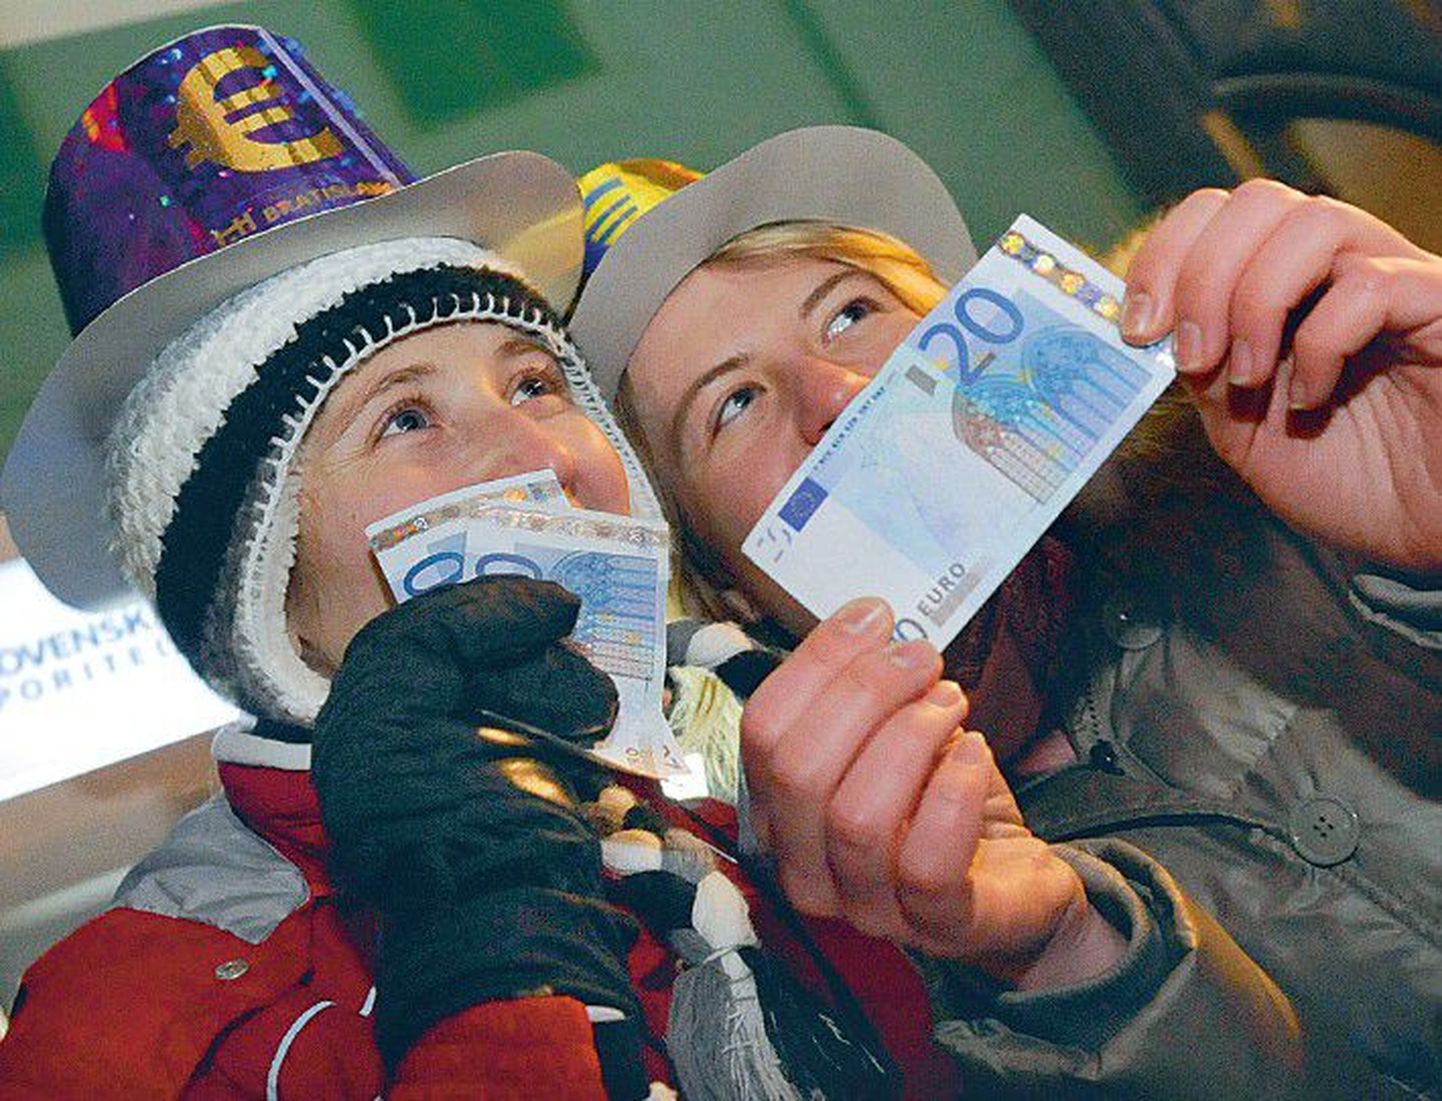 В Словакии день 1 января стал особенно радостным, поскольку страна перешла на евро. В Эстонии эта мечта может сбыться еще не скоро — из-за растущей инфляции мы не можем выполнить необходимых критериев.